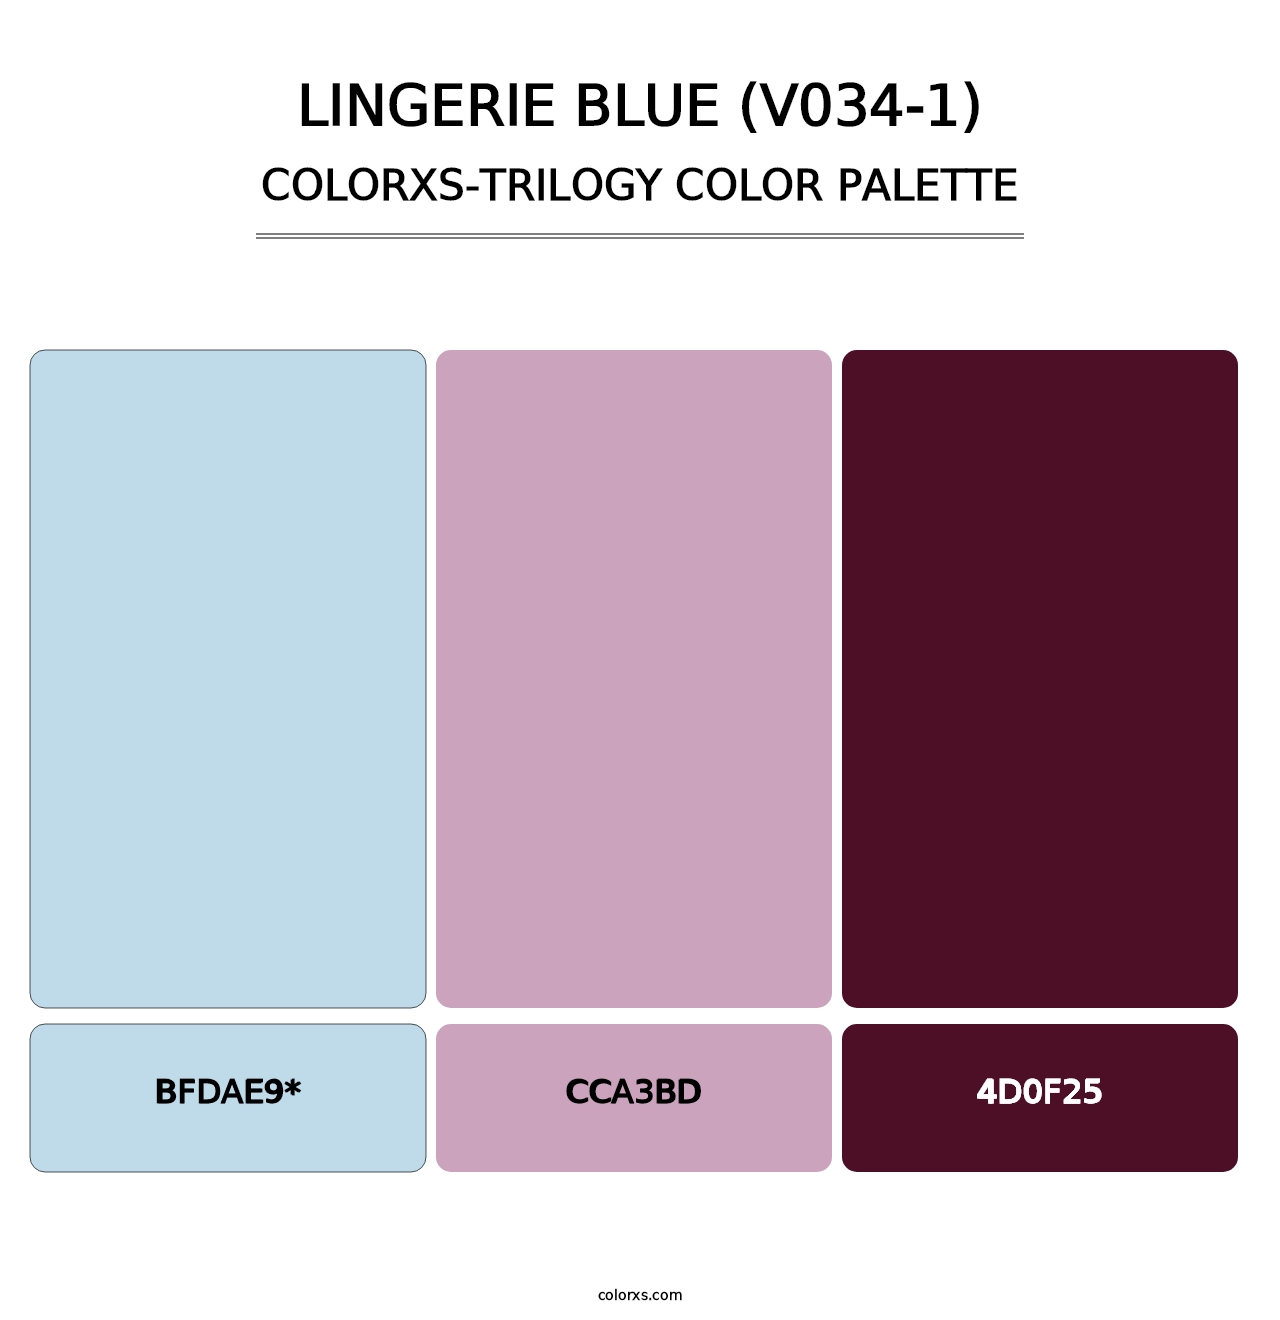 Lingerie Blue (V034-1) - Colorxs Trilogy Palette